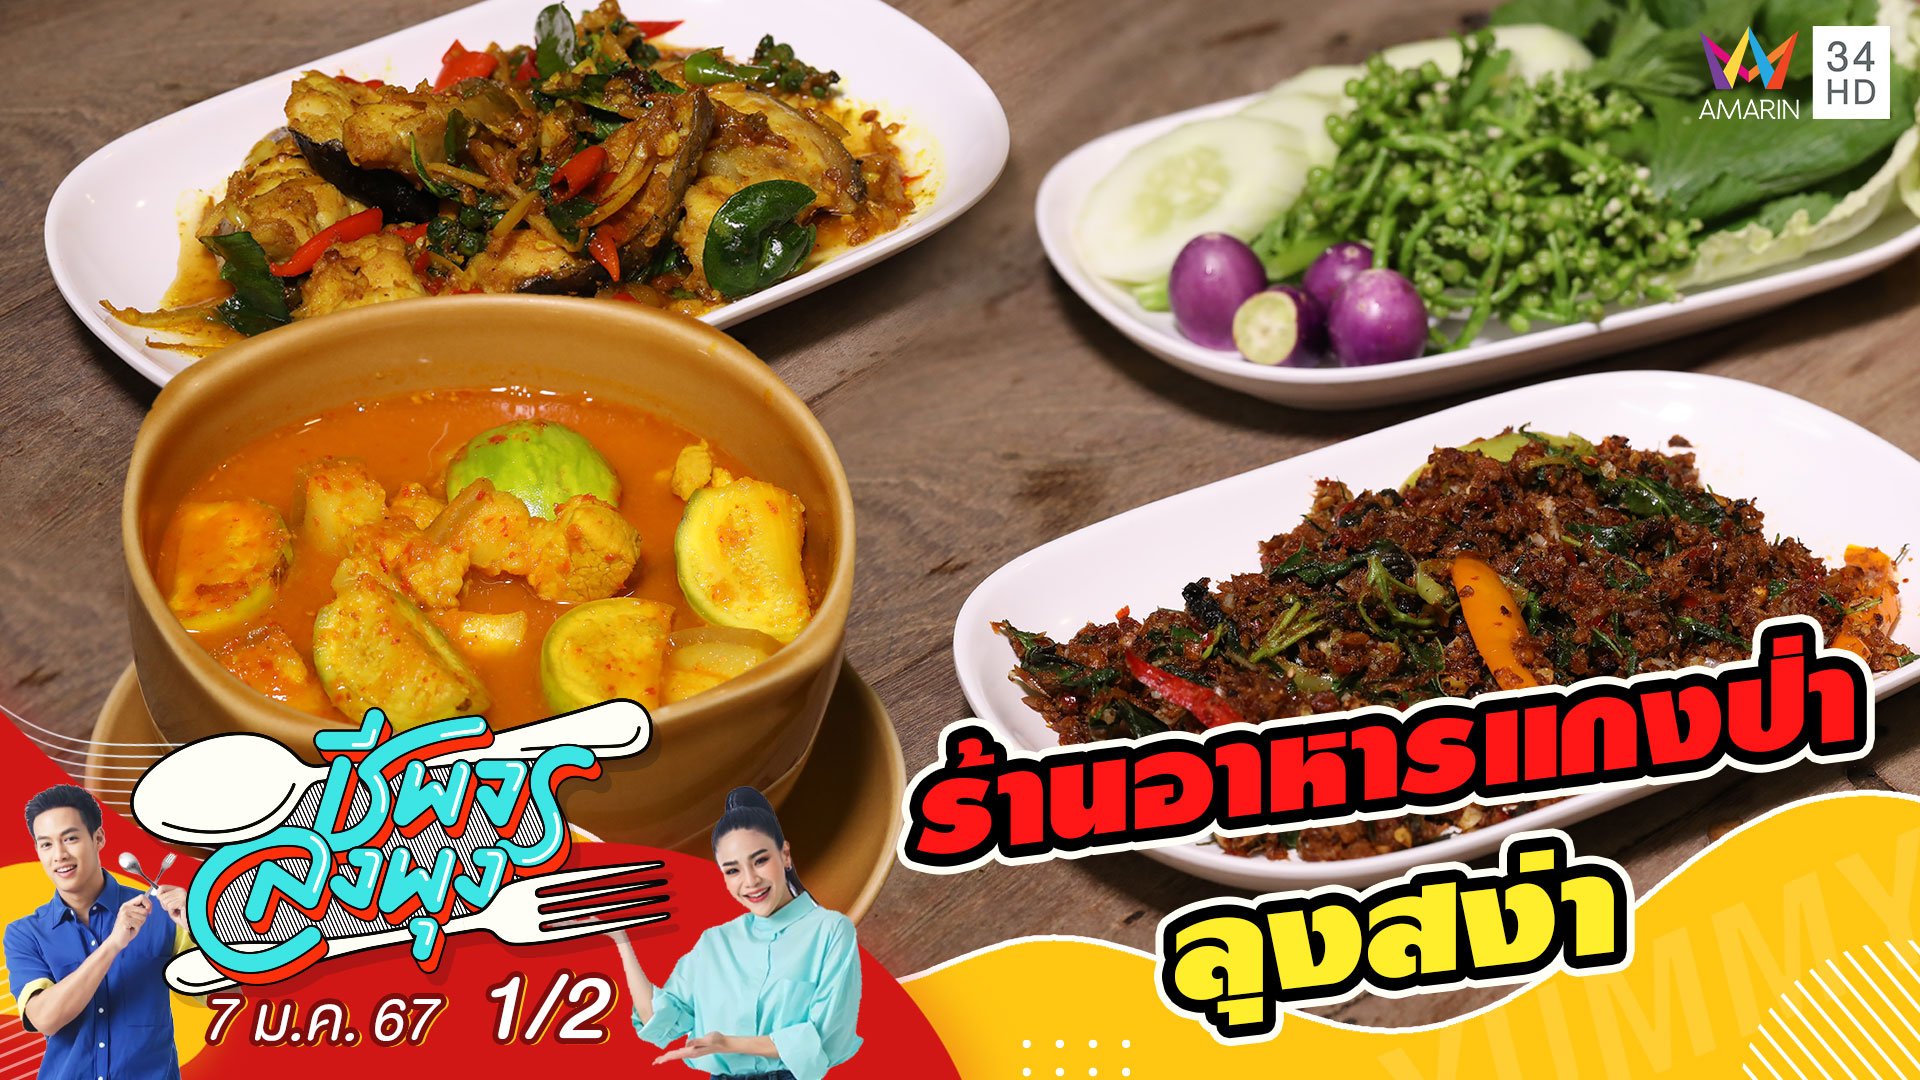 ร้านอาหารแกงป่าลุงสง่า ร้านอาหารไทยพื้นบ้านรสชาติจัดจ้าน | ชีพจรลงพุง | 7 ม.ค. 67 (1/2) | AMARIN TVHD34